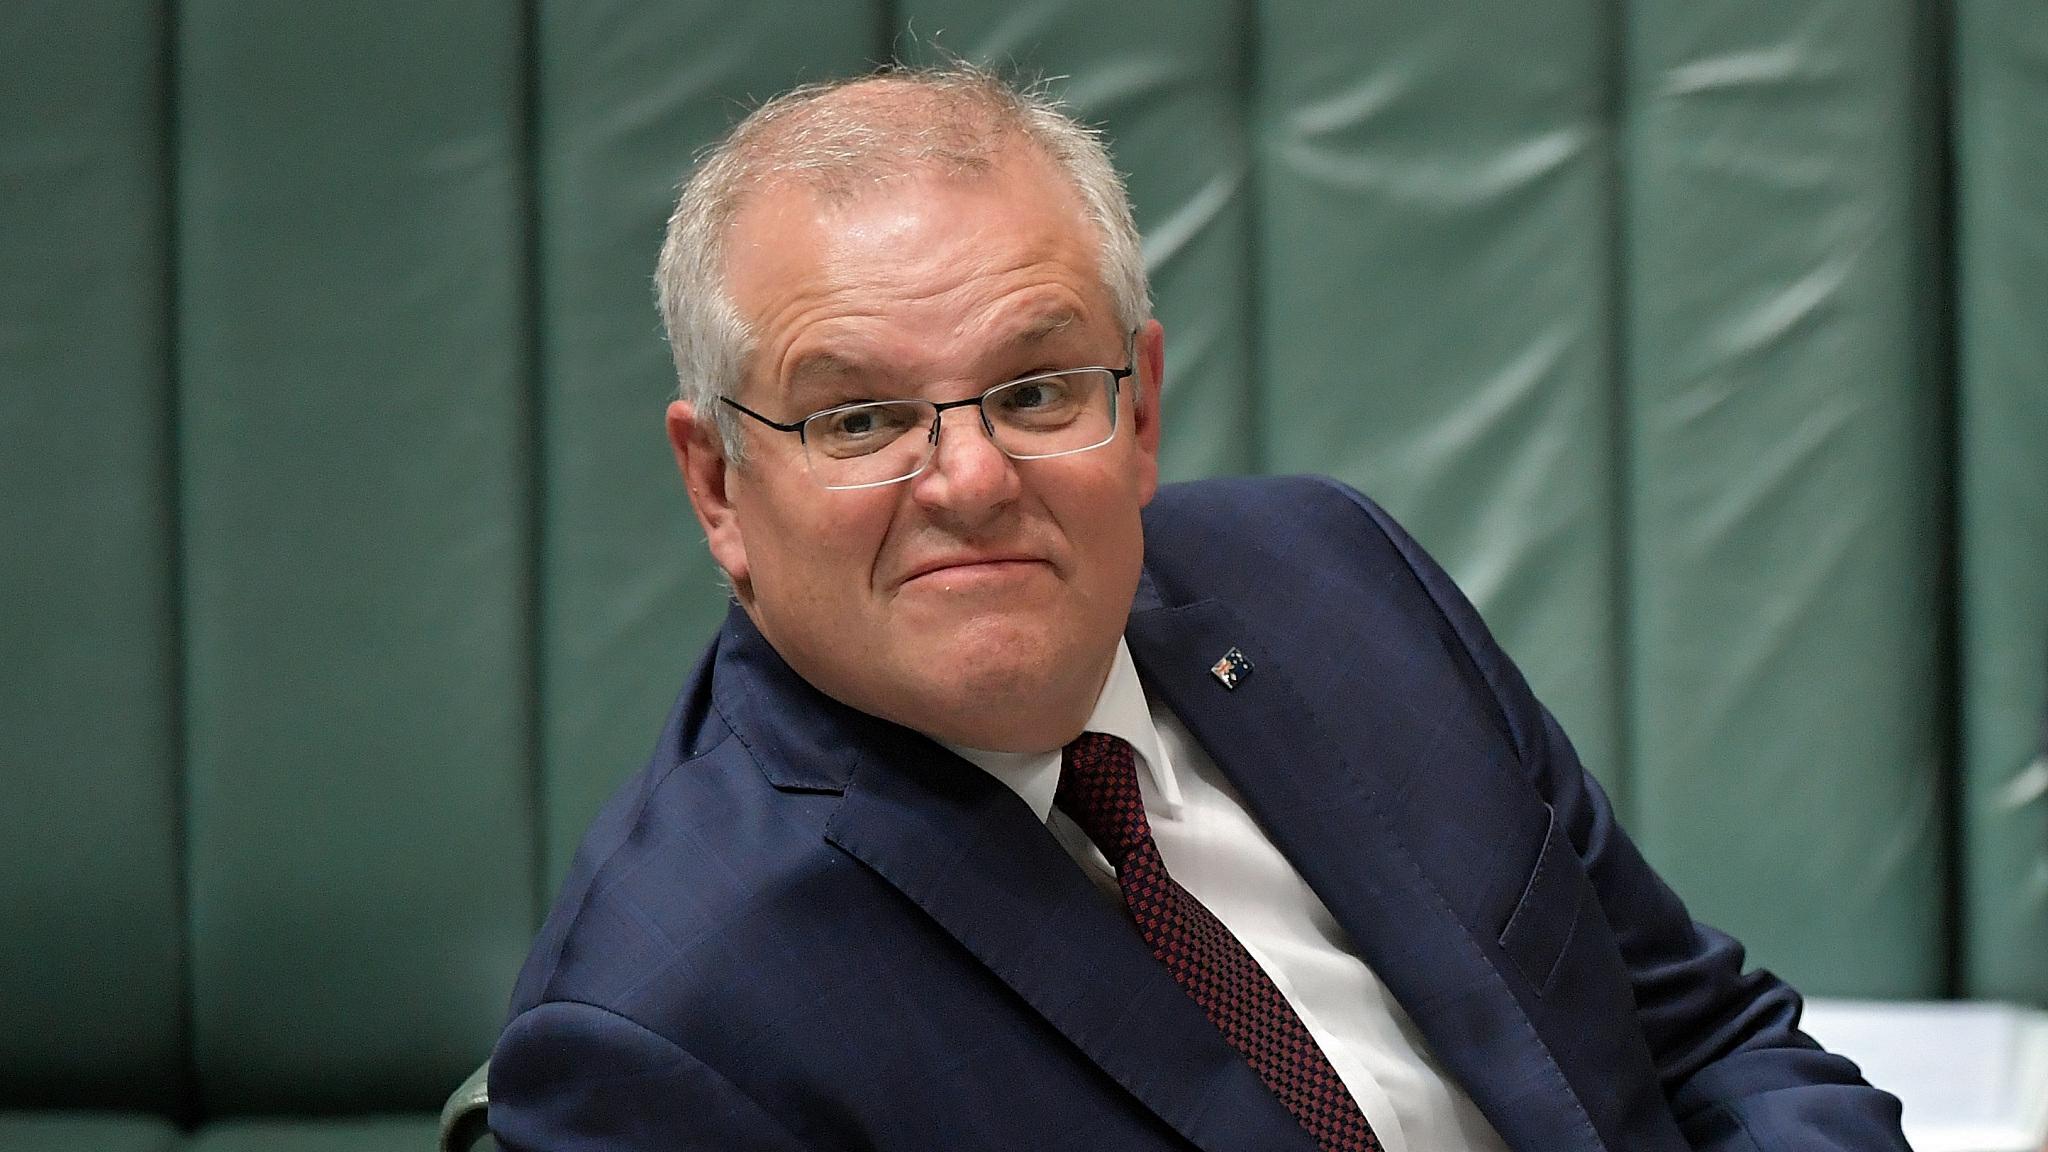 Un autre député du gouvernement australien sous le feu des critiques pour séxisme